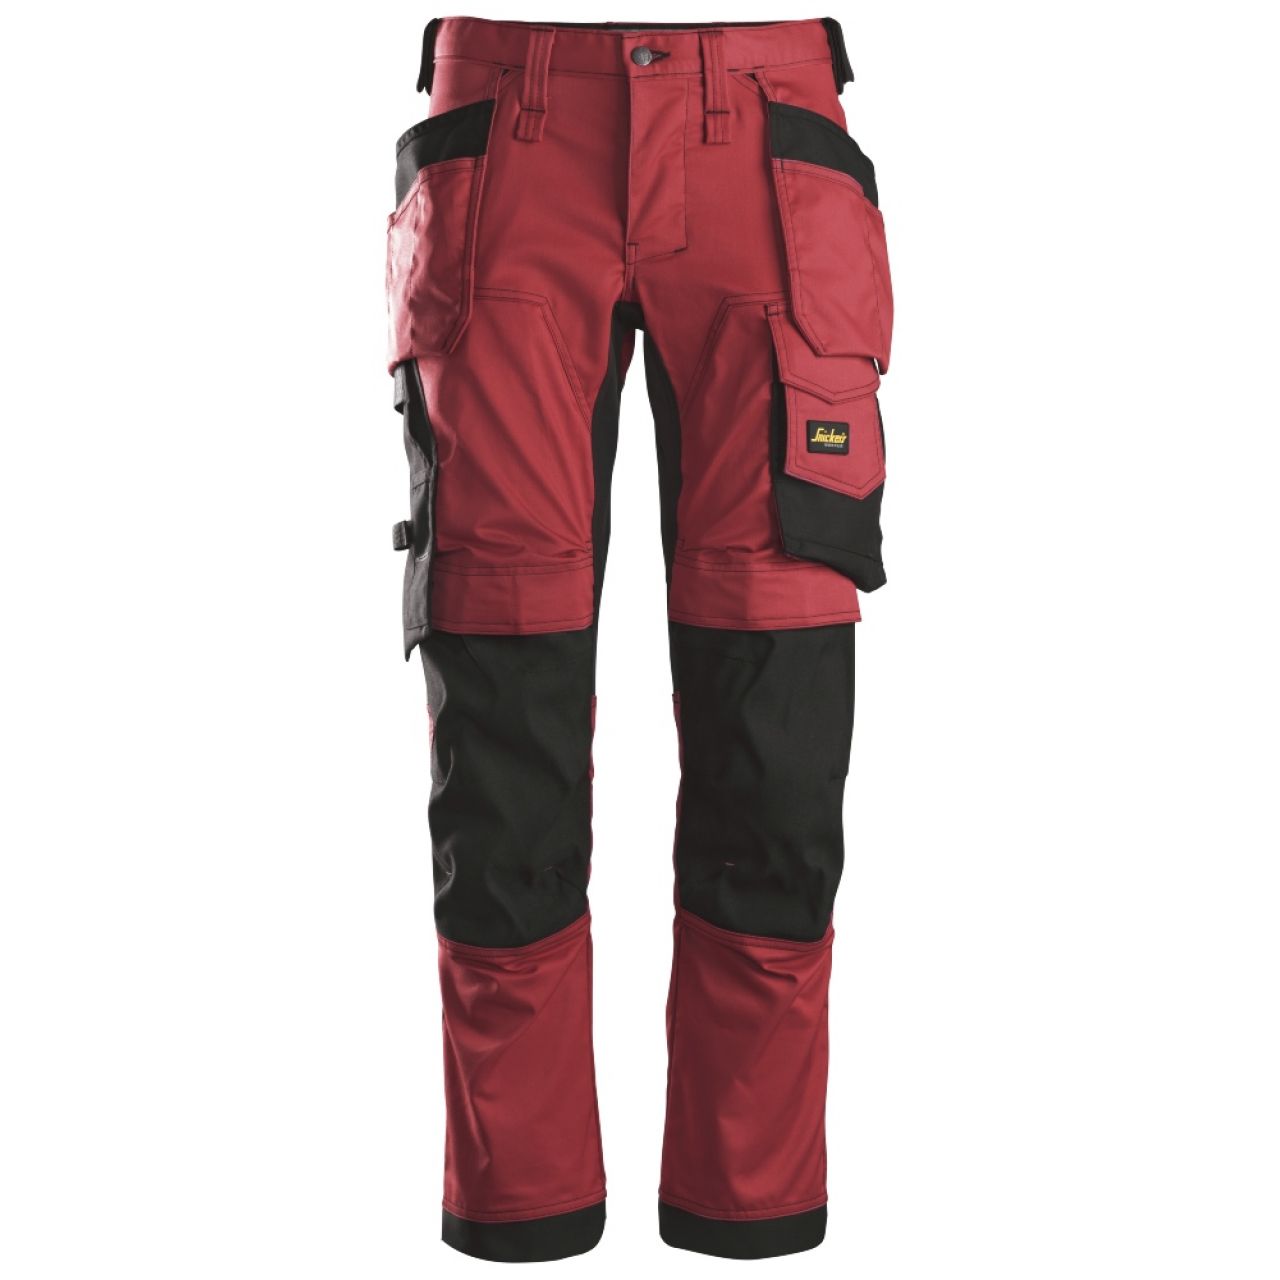 6241 Pantalones largos de trabajo elásticos con bolsillos flotantes AllroundWork rojo-negro talla 124